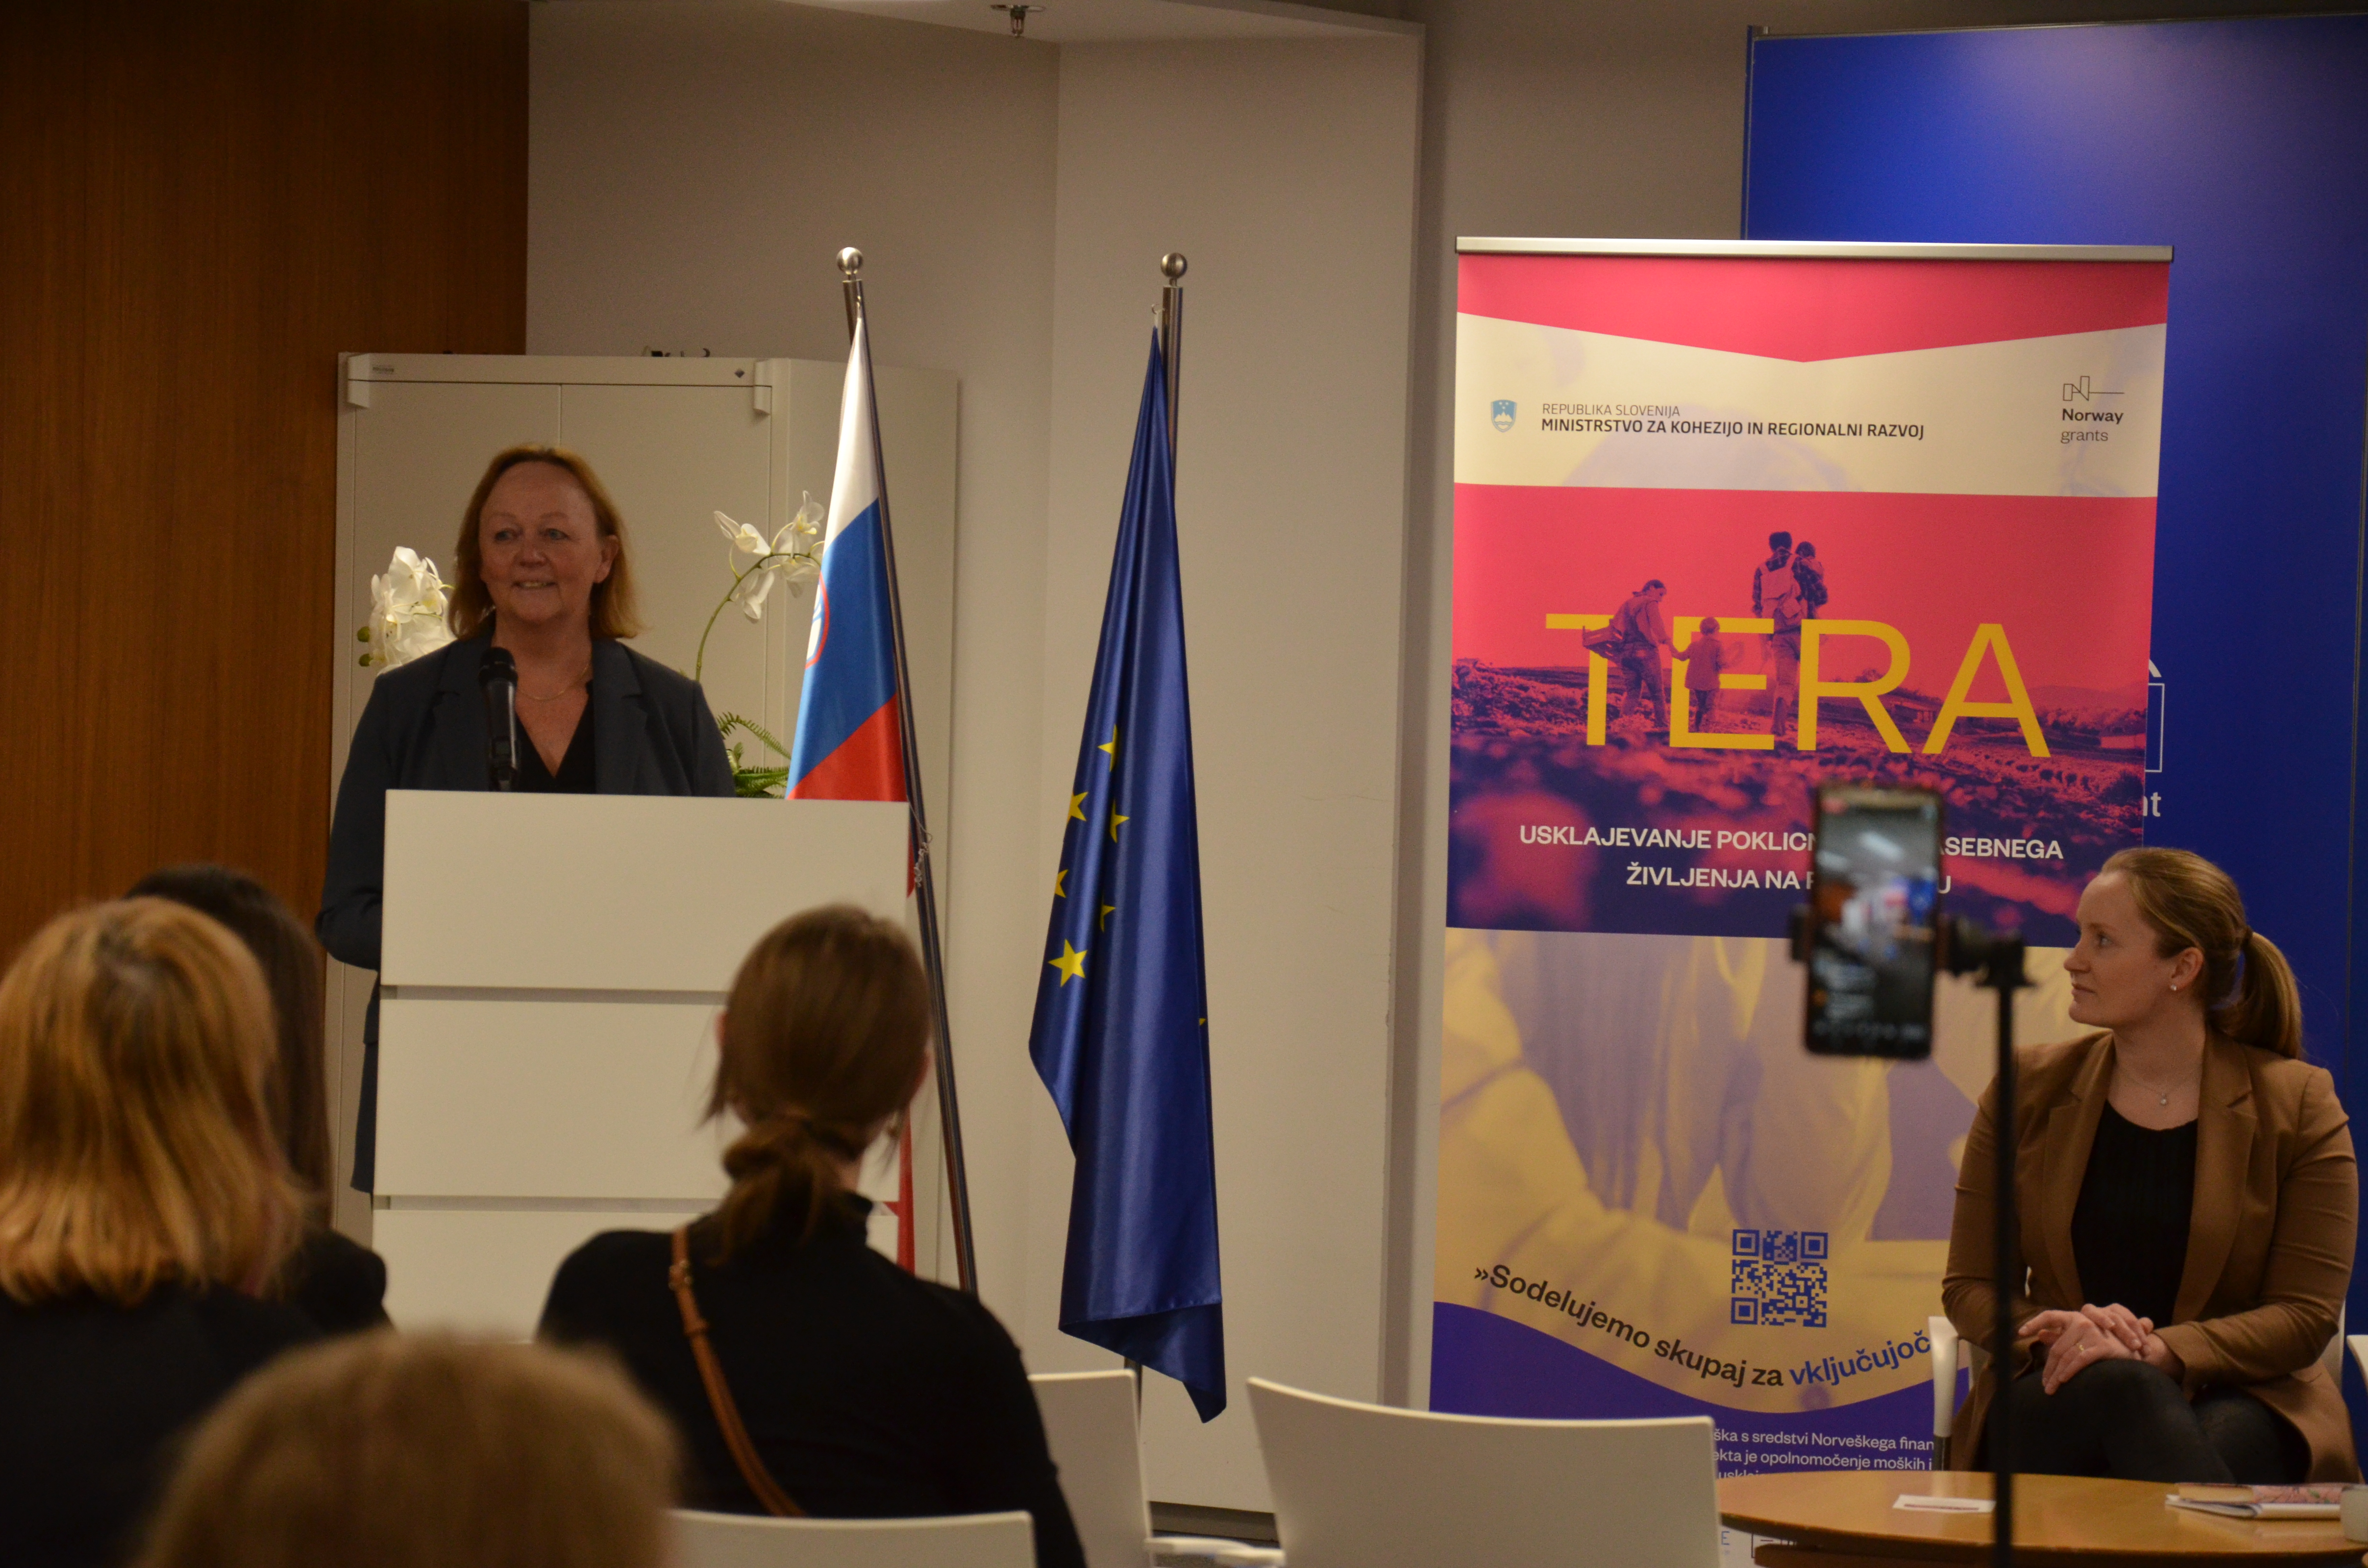 Opening speech by Her Excellency Trina Skymoen, Ambassador of Norway.